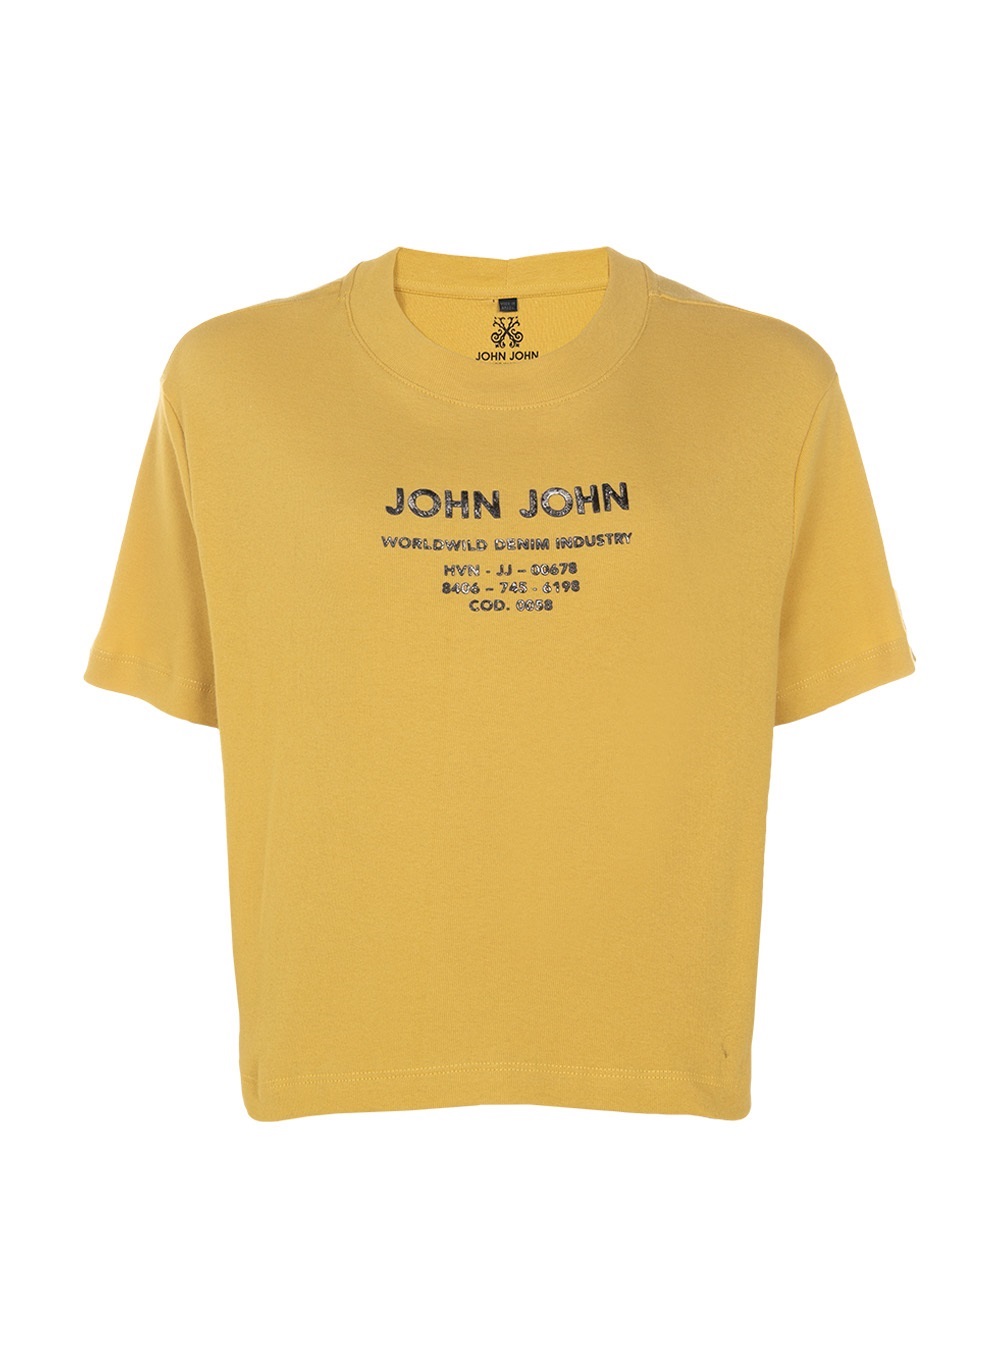 Camiseta Eagle John John Feminina 03.62.0288 - Estoque